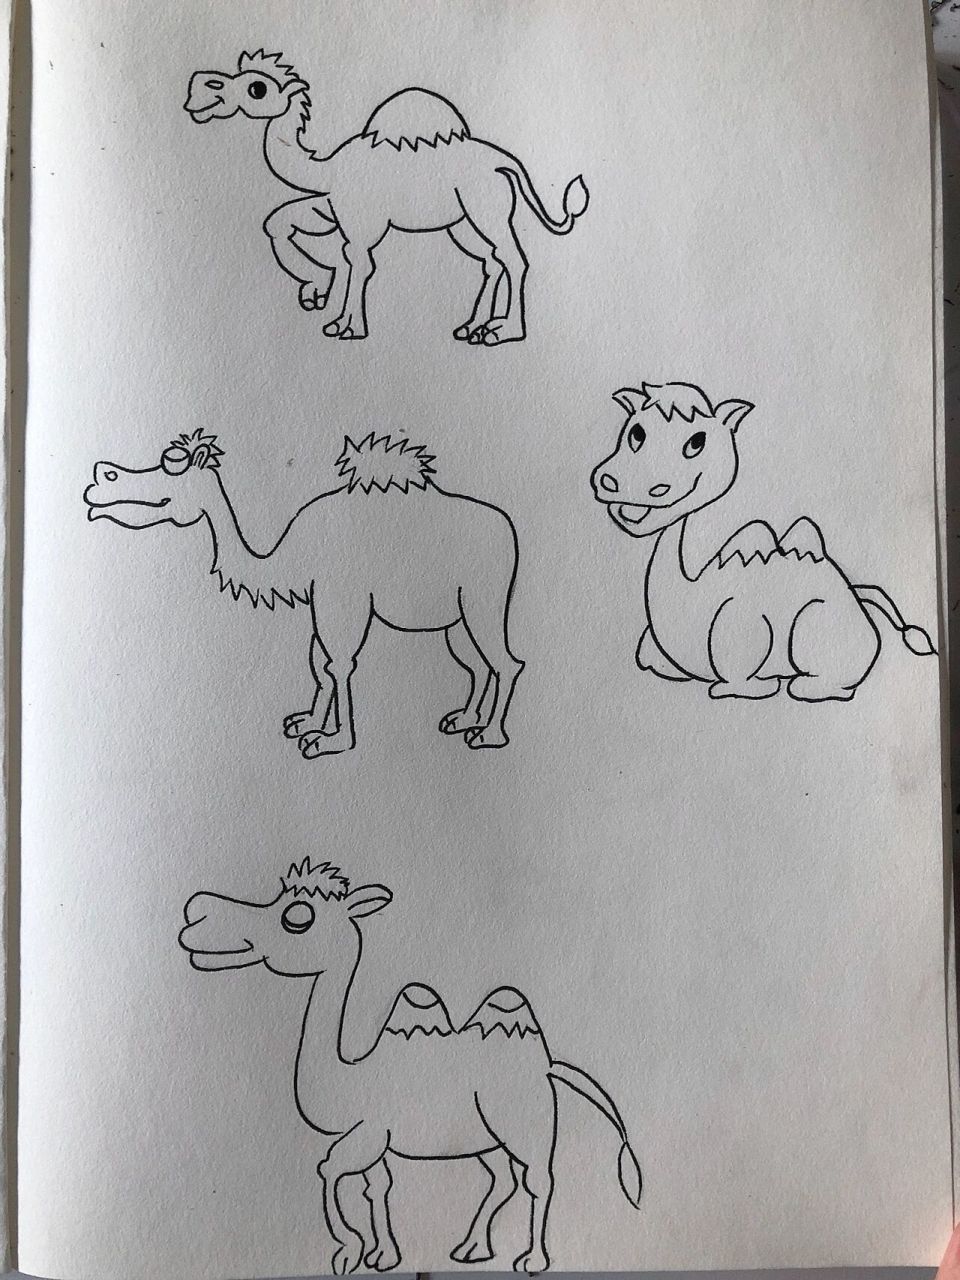 简笔画骆驼 简单图片